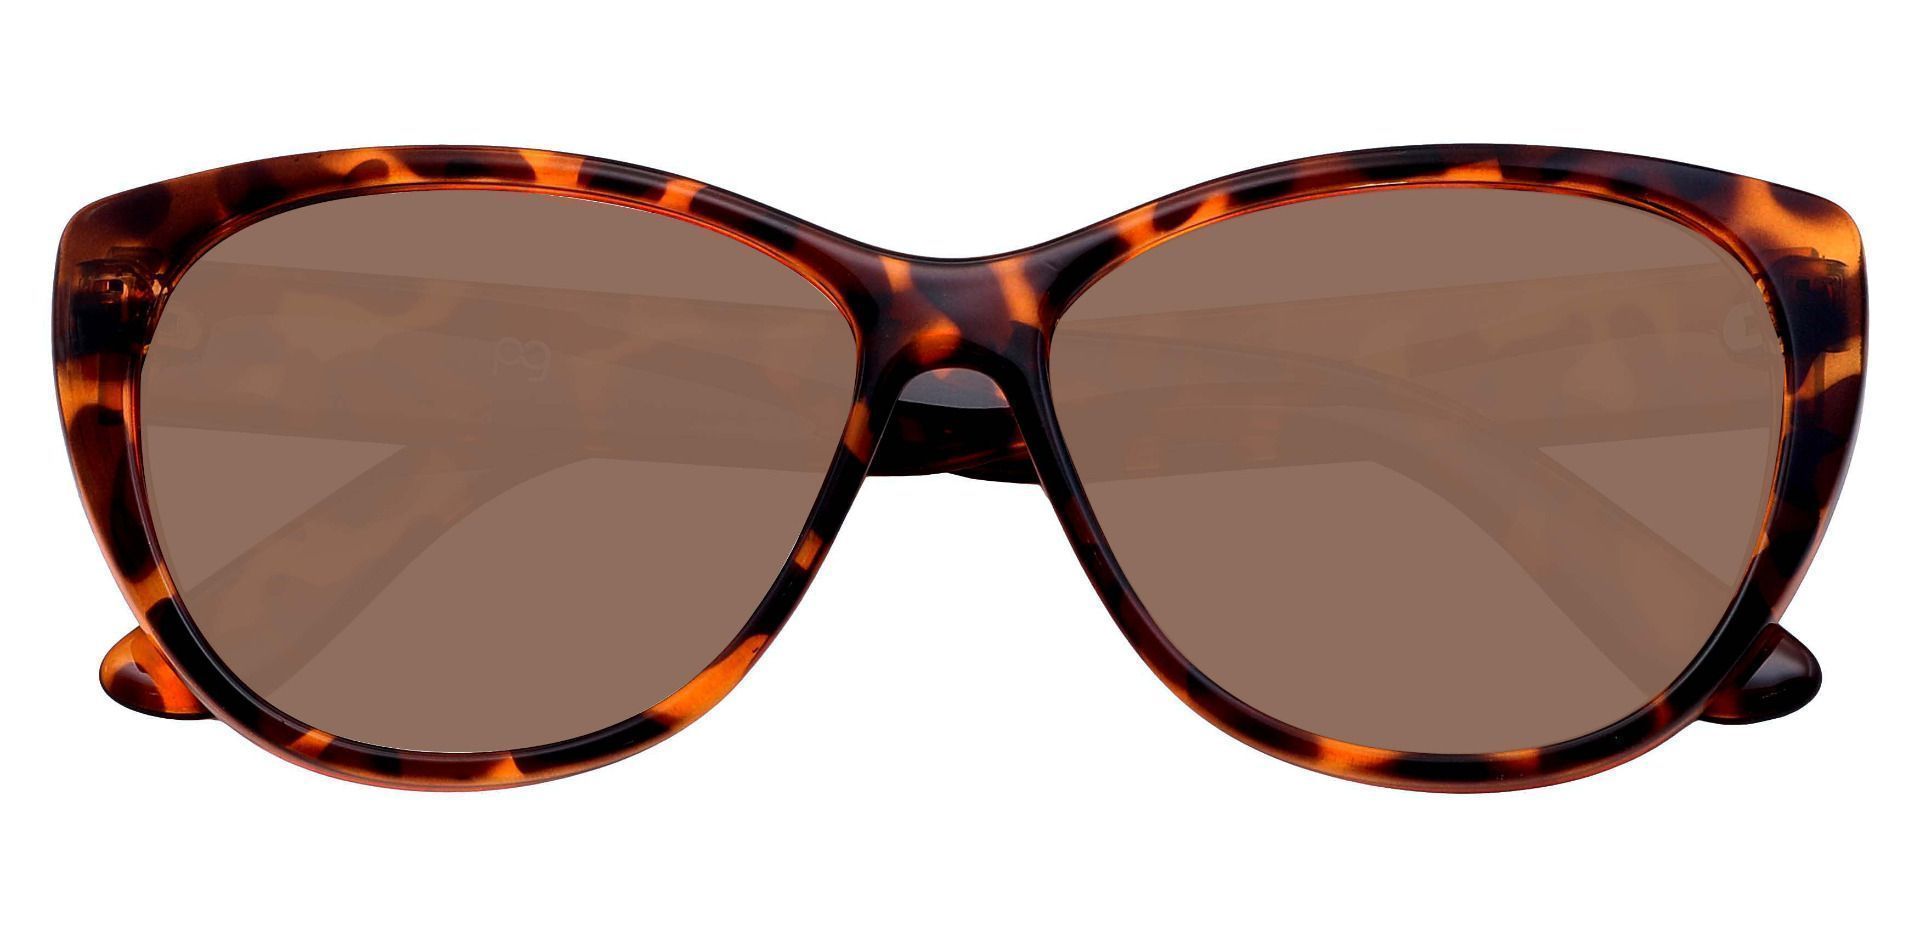 Lynn Cat-Eye Non-Rx Sunglasses - Tortoise Frame With Brown Lenses